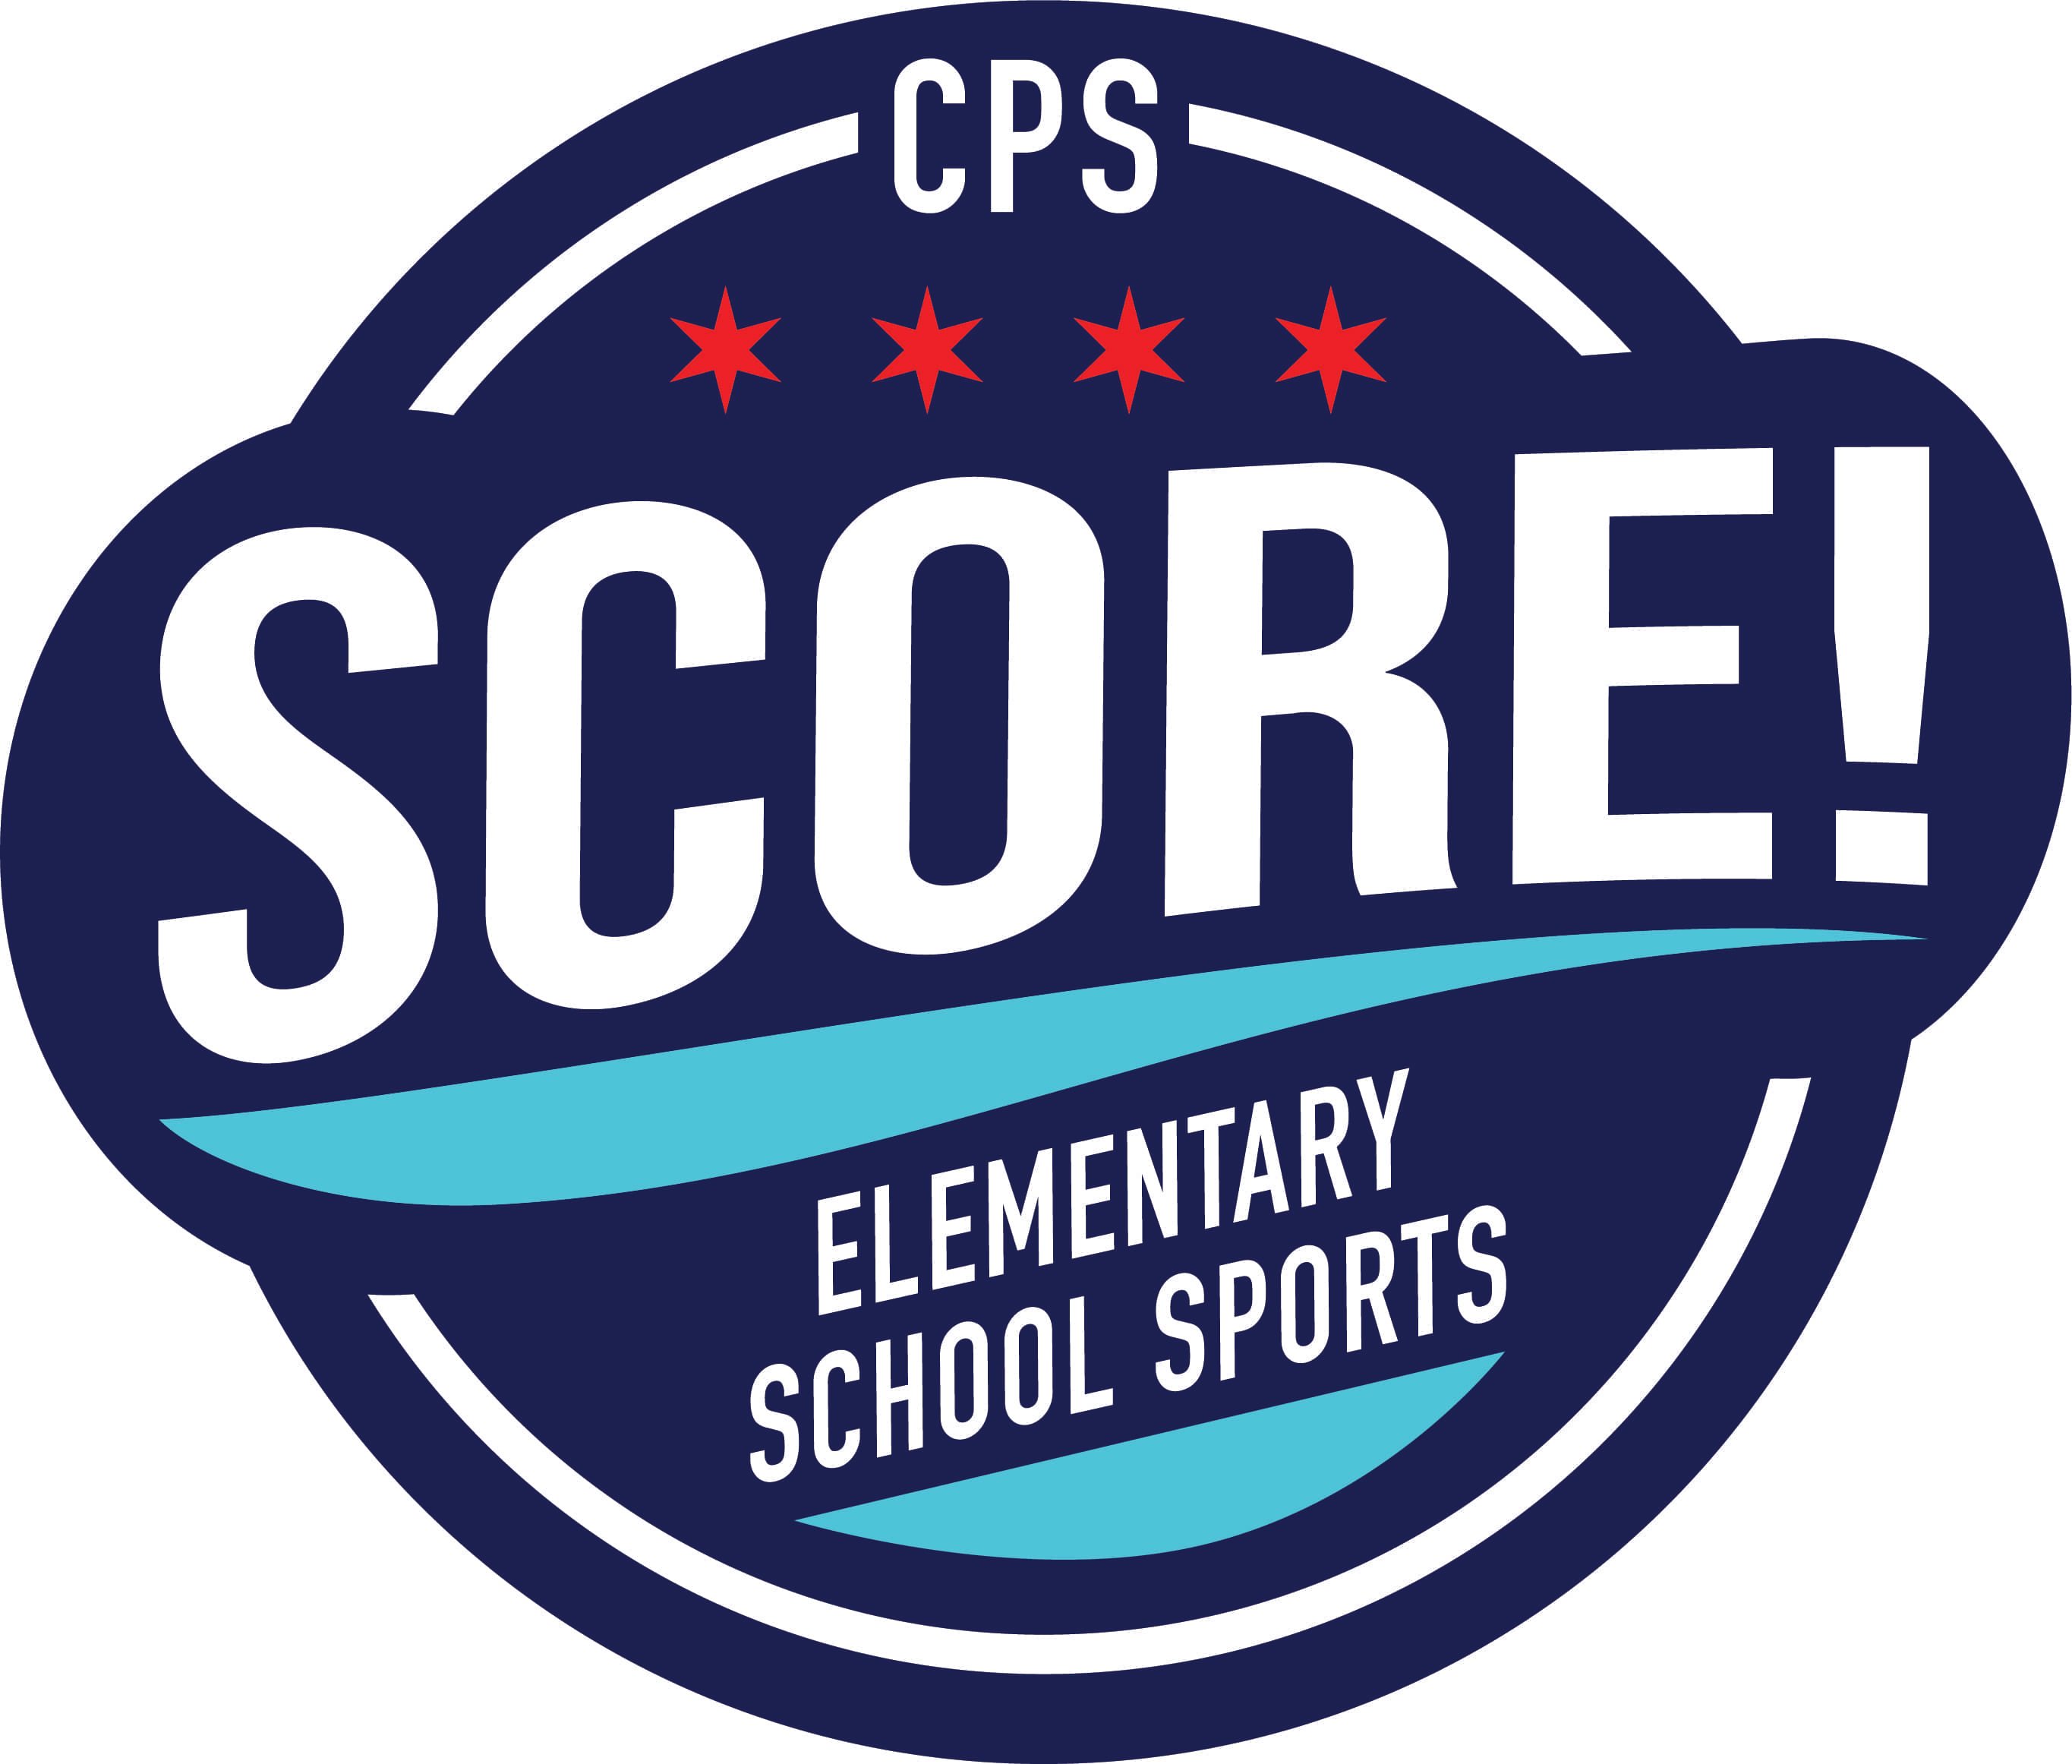 CPS SCORE! Chicago Public Schools